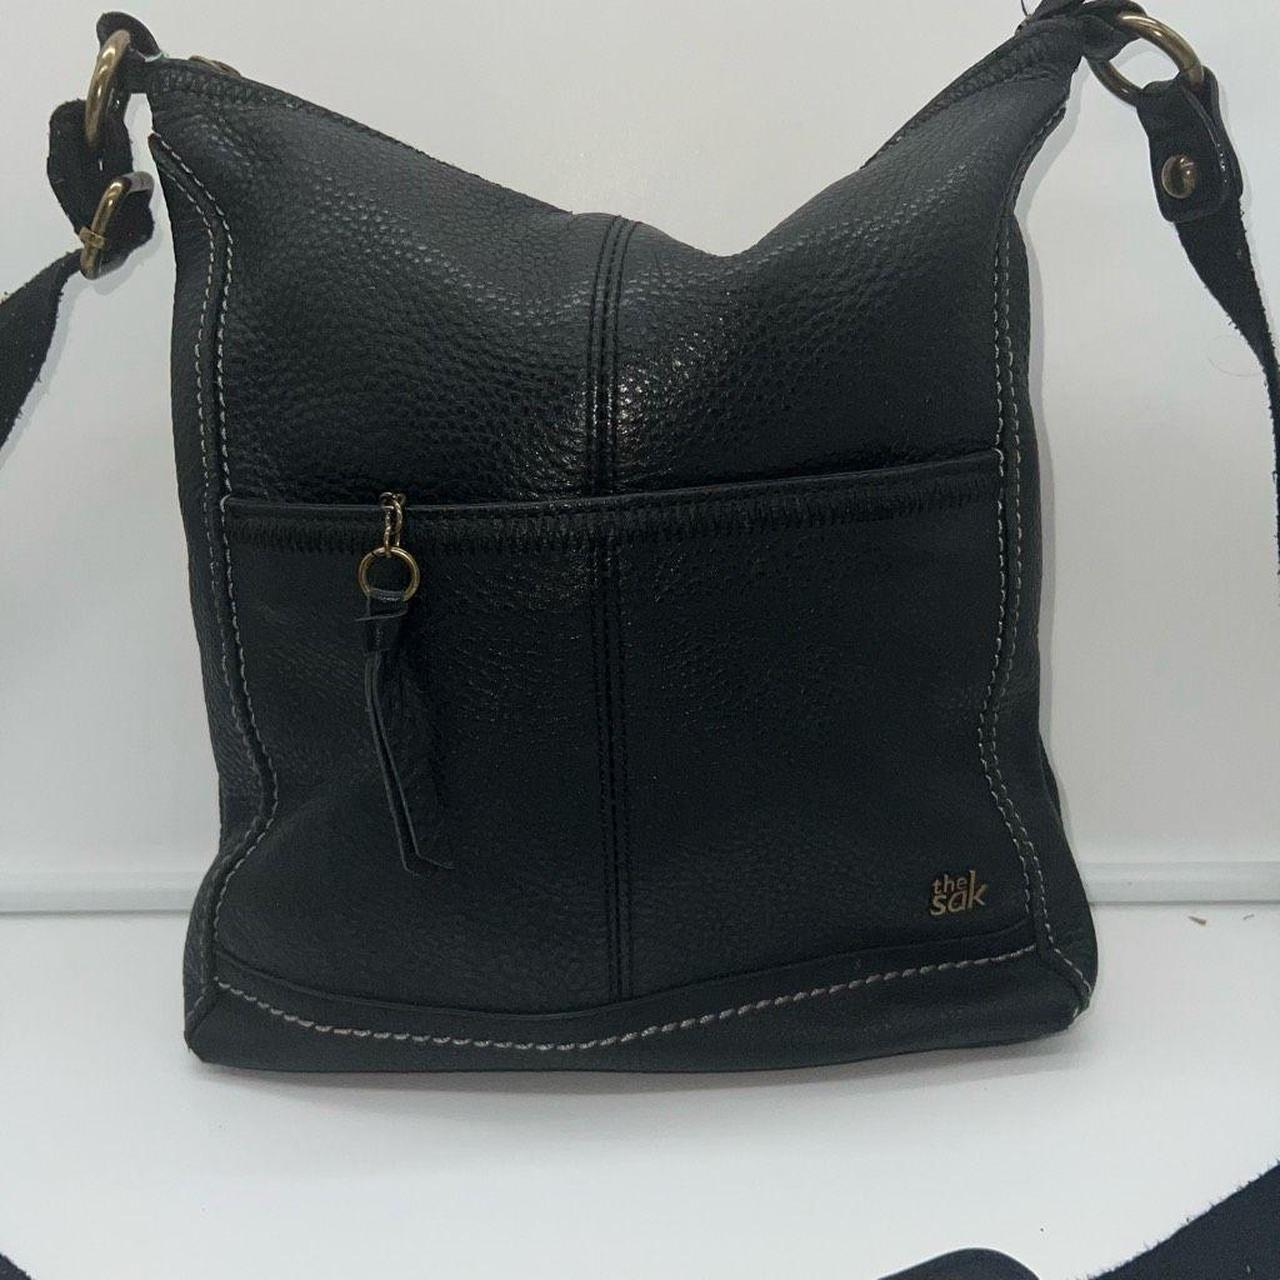 Ashland Crossbody | Leather, Bags, The sak